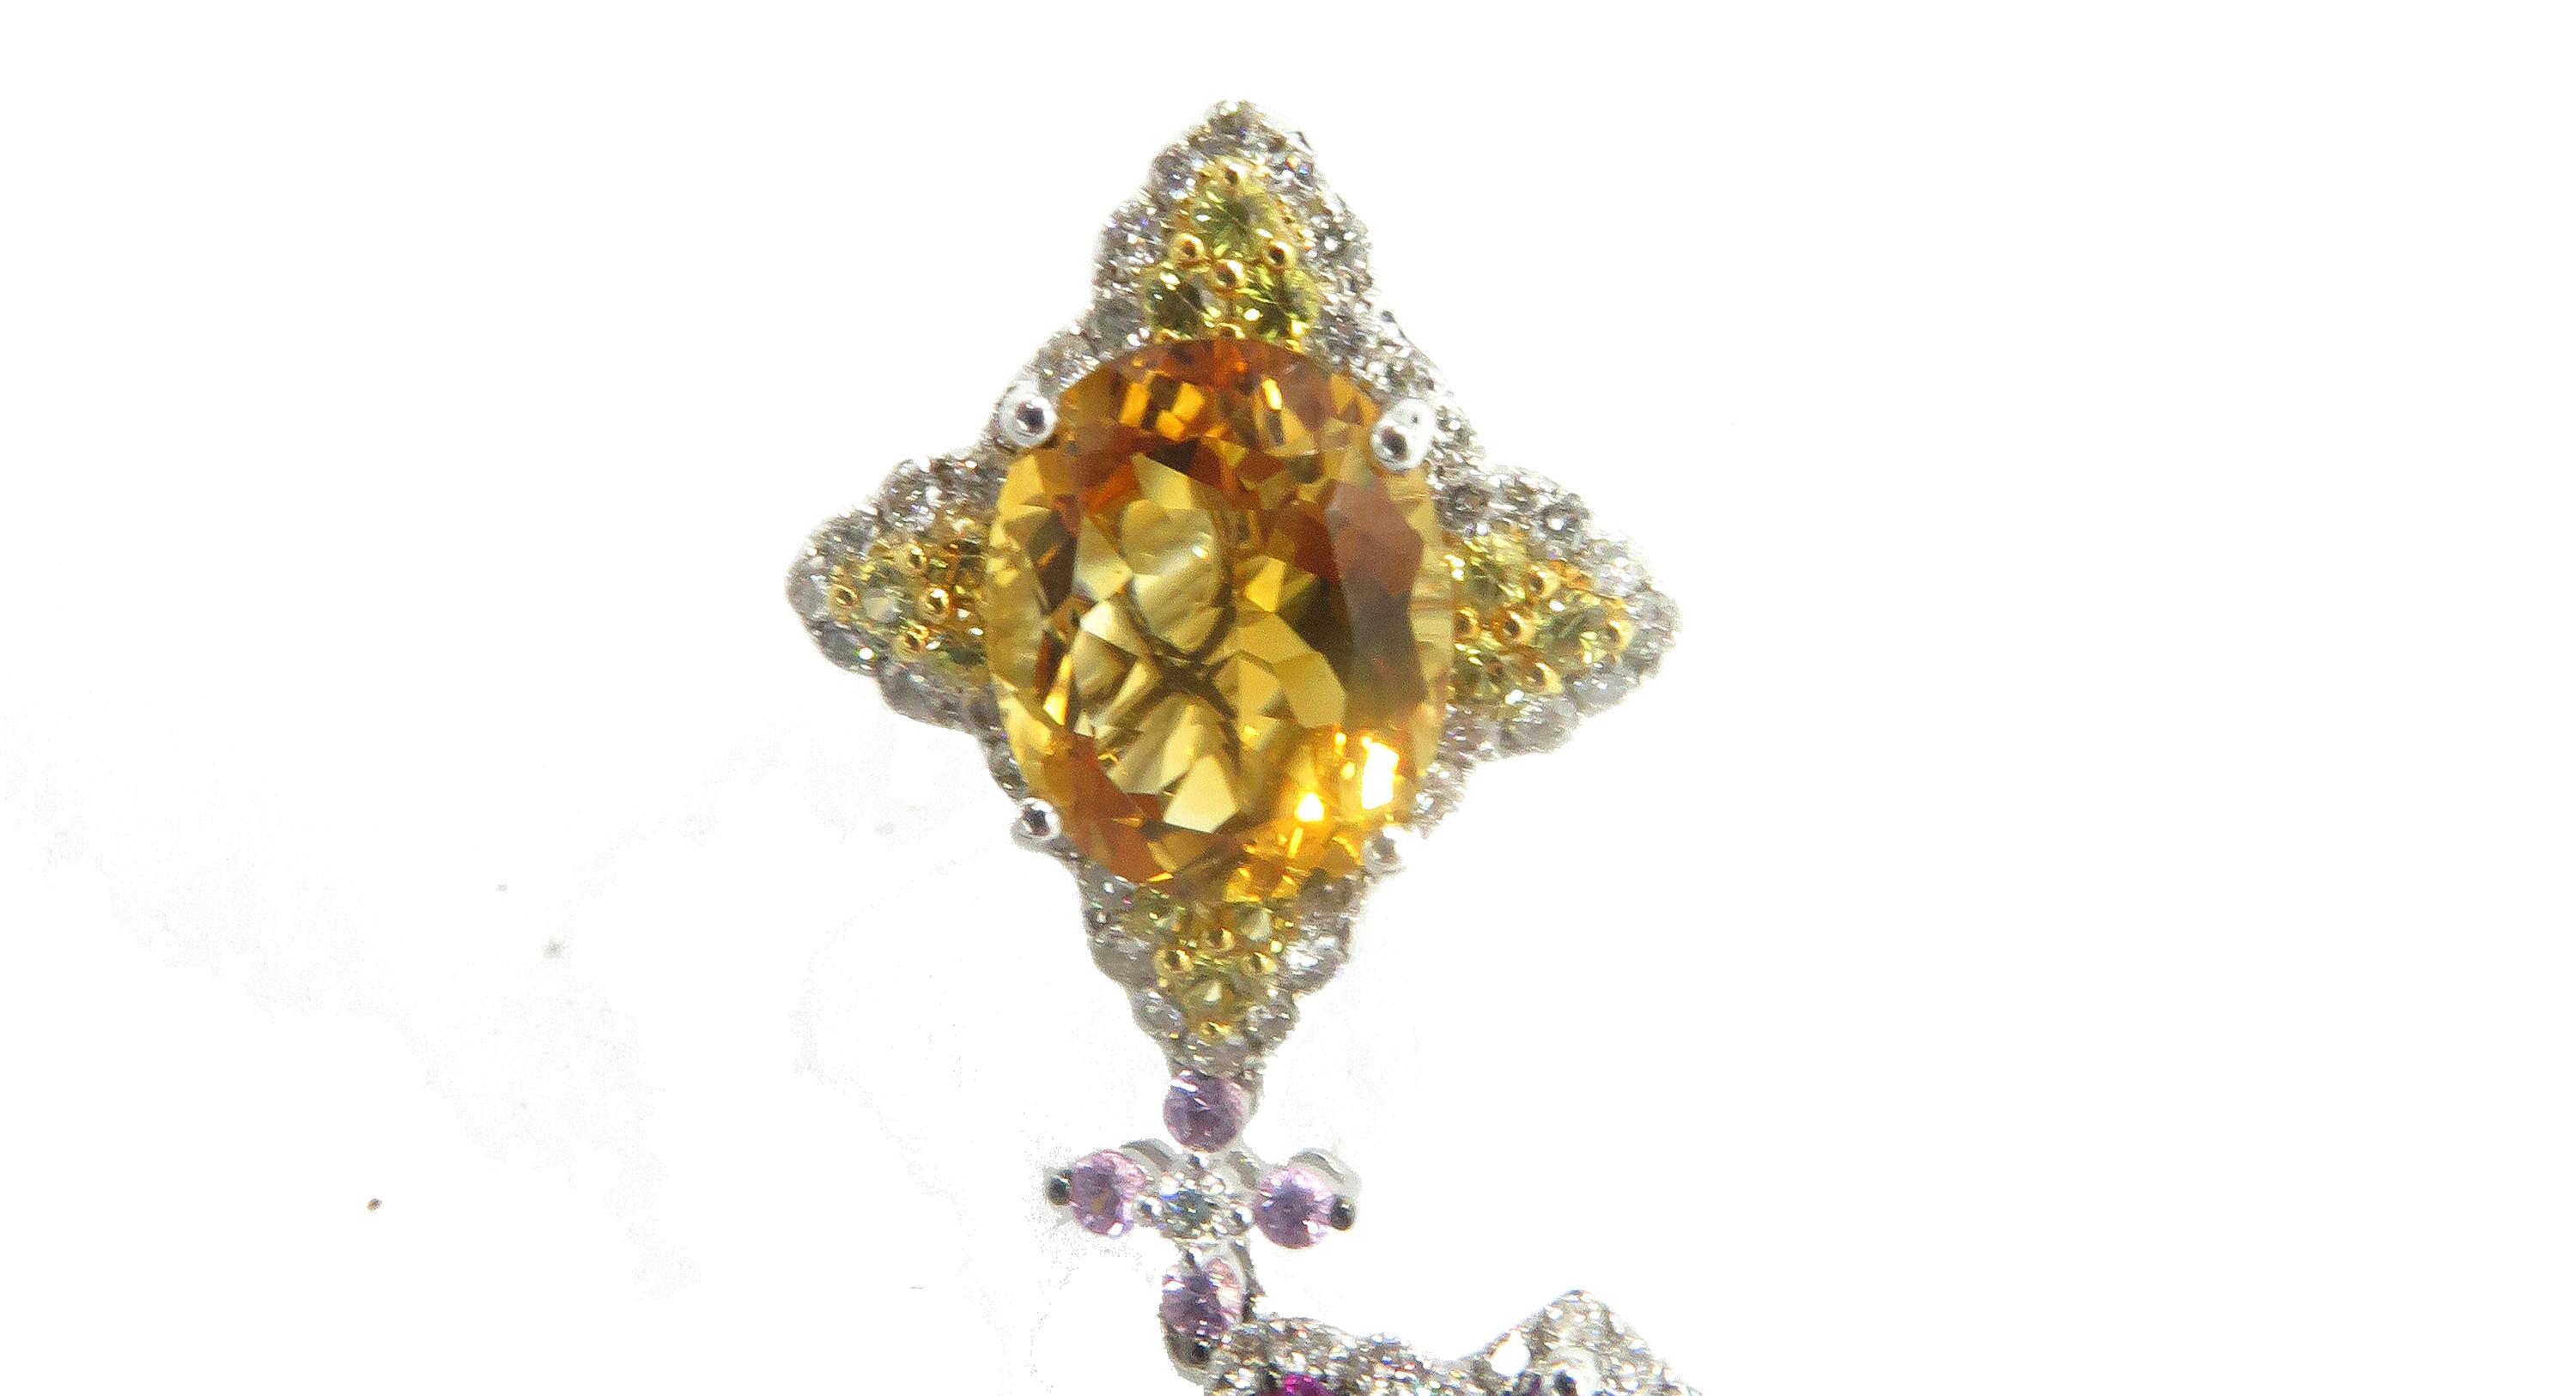 Schönes Paar Ohrringe aus Weißgold mit Amethysten, orangefarbenen Saphiren und Citrin-Diamanten. Sie sind in 18k Weißgold in einer schönen polierten Oberfläche gemacht und diese Ohrringe sind 2,1 